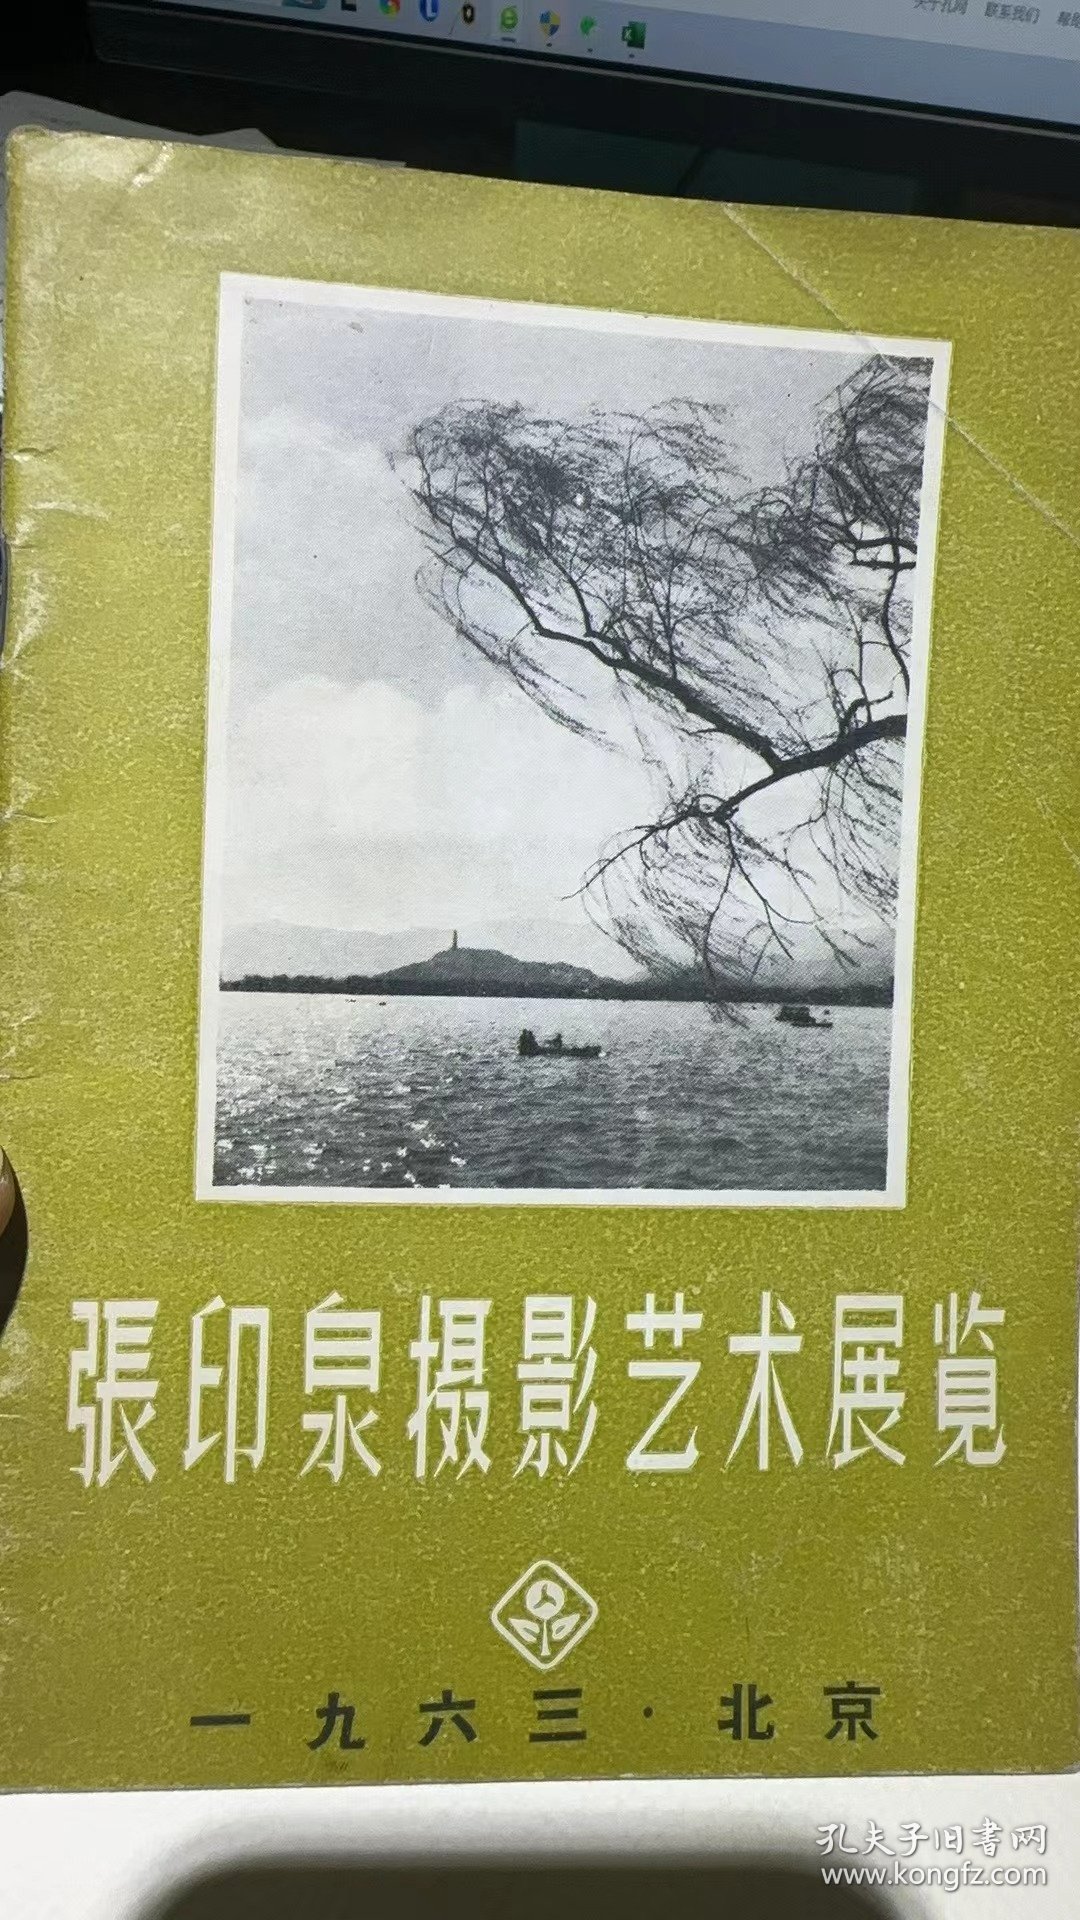 张印泉摄影艺术展览 1963 北京